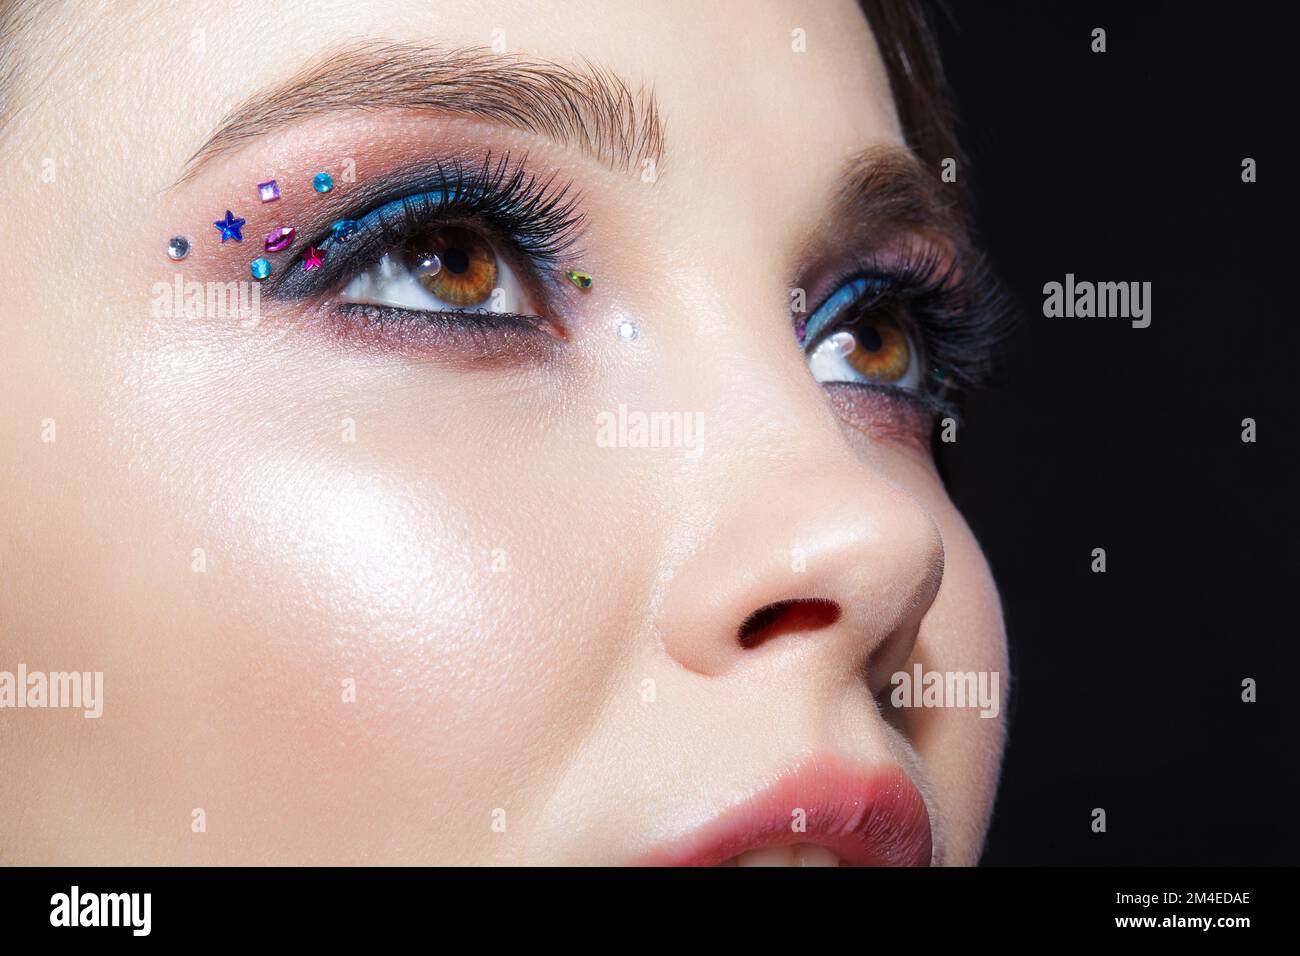 Nahaufnahme des menschlichen Frauengesichts. Frau mit natürlichem Gesicht  und Augen Beauty Make-up mit blauem Lidschatten und Strasssteinen  Stockfotografie - Alamy